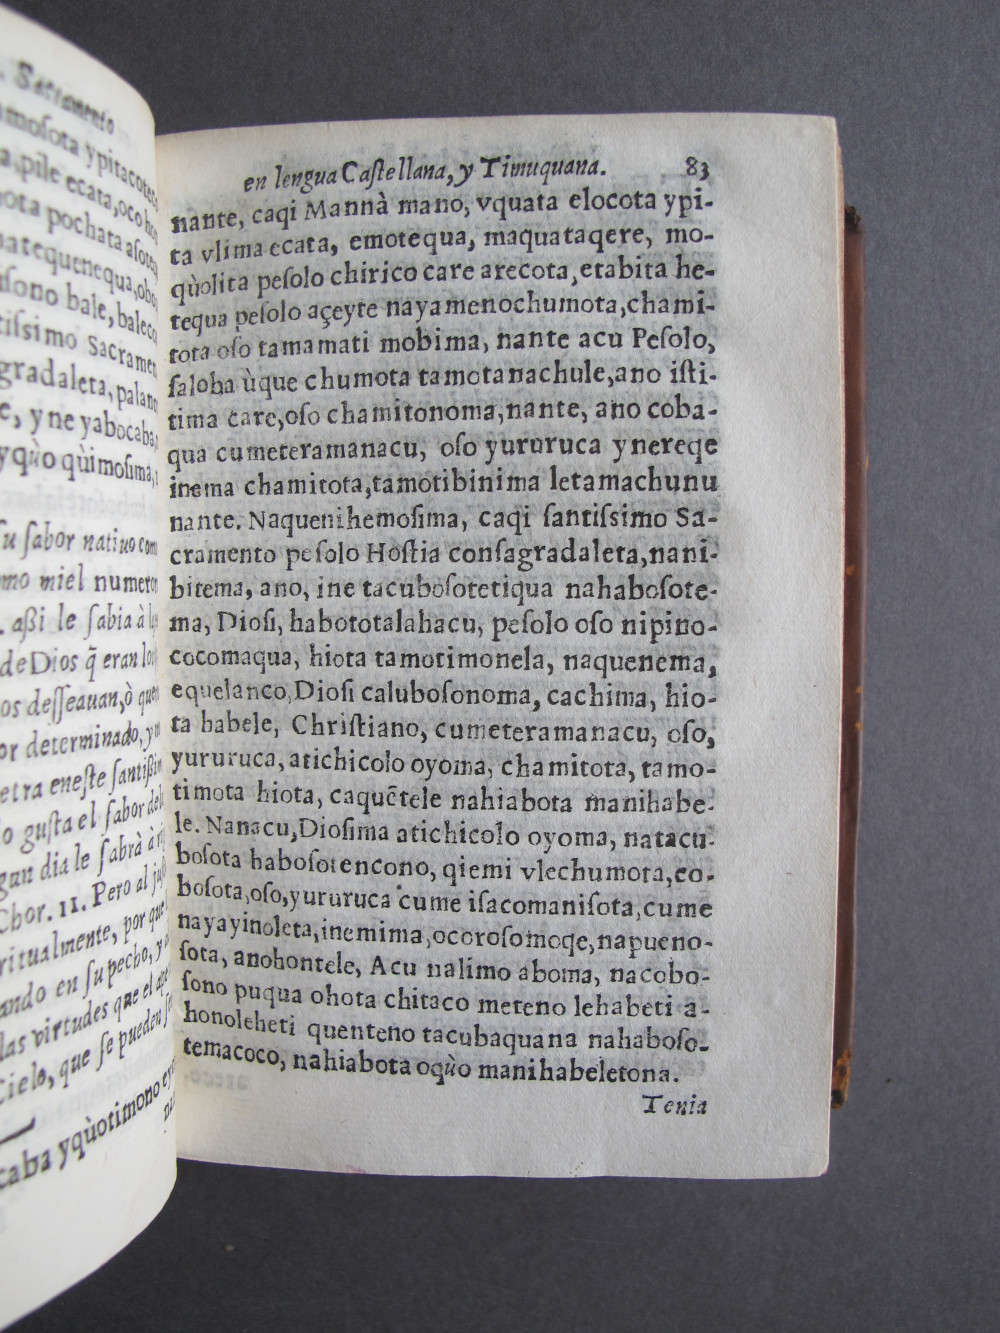 Folio L6 recto